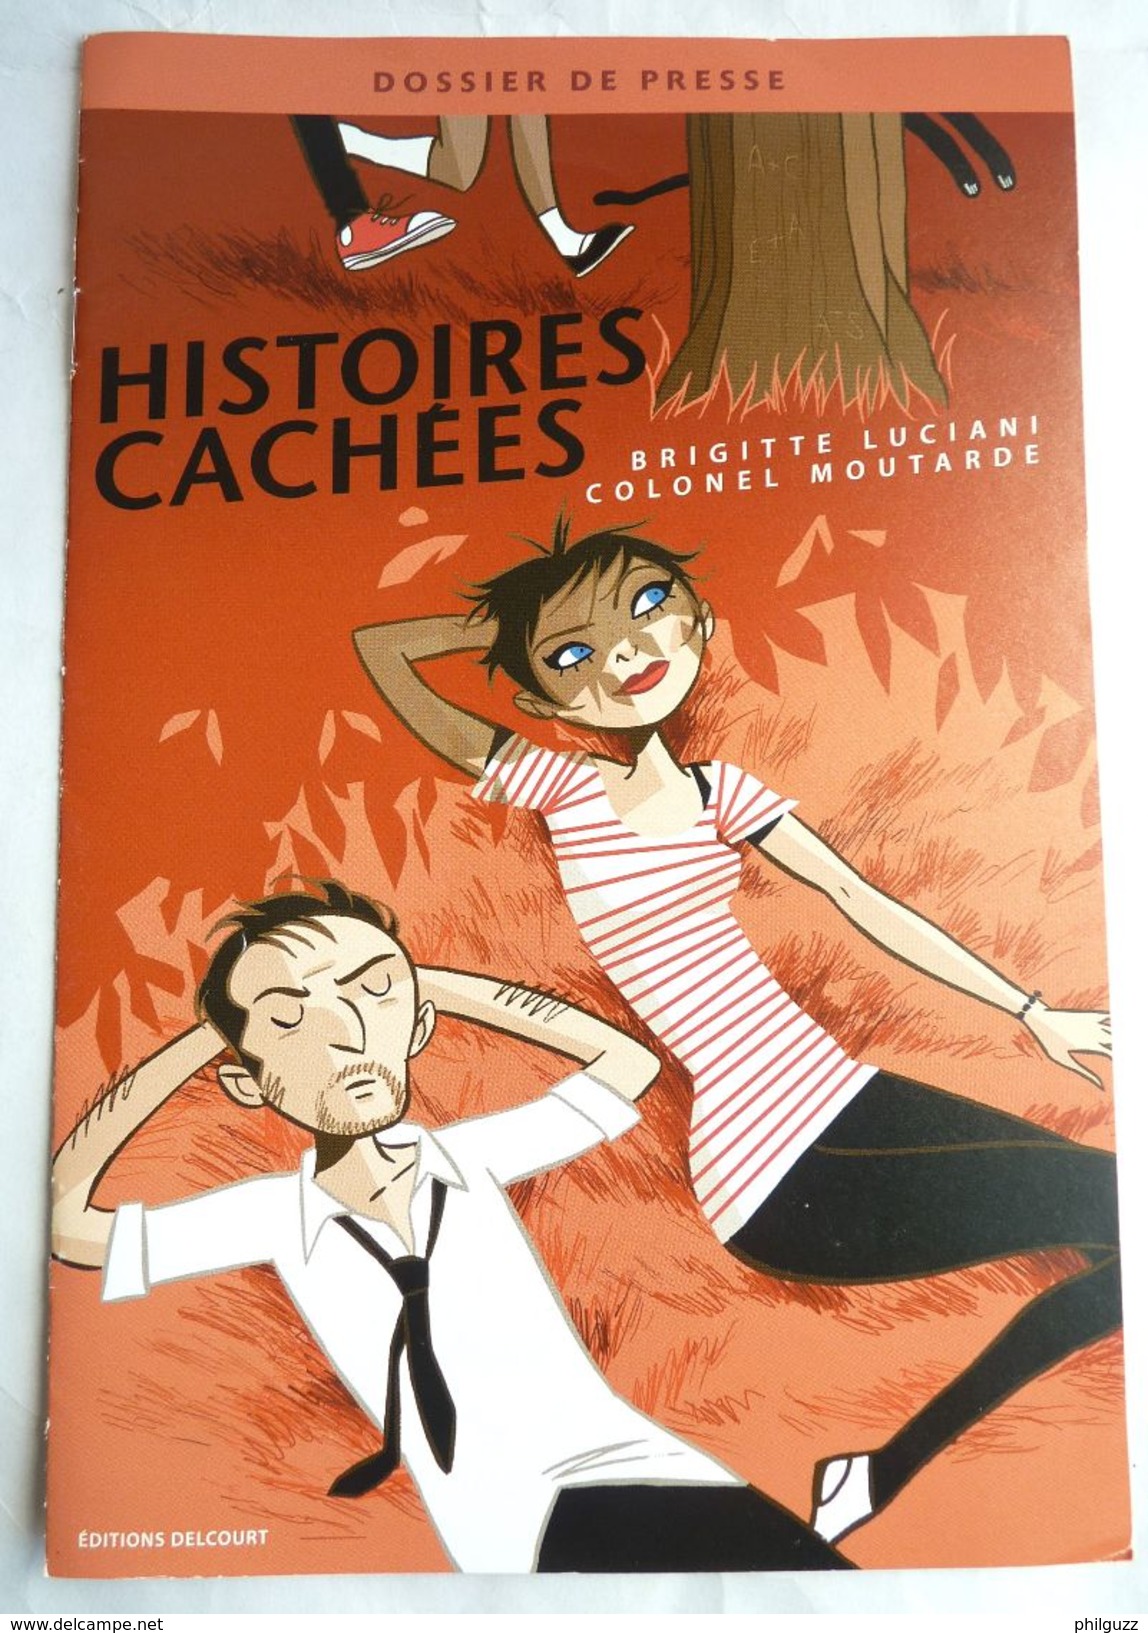 DOSSIER DE PRESSE HISTOIRES CACHEES COLONEL MOUTARDE  2009 - Press Books